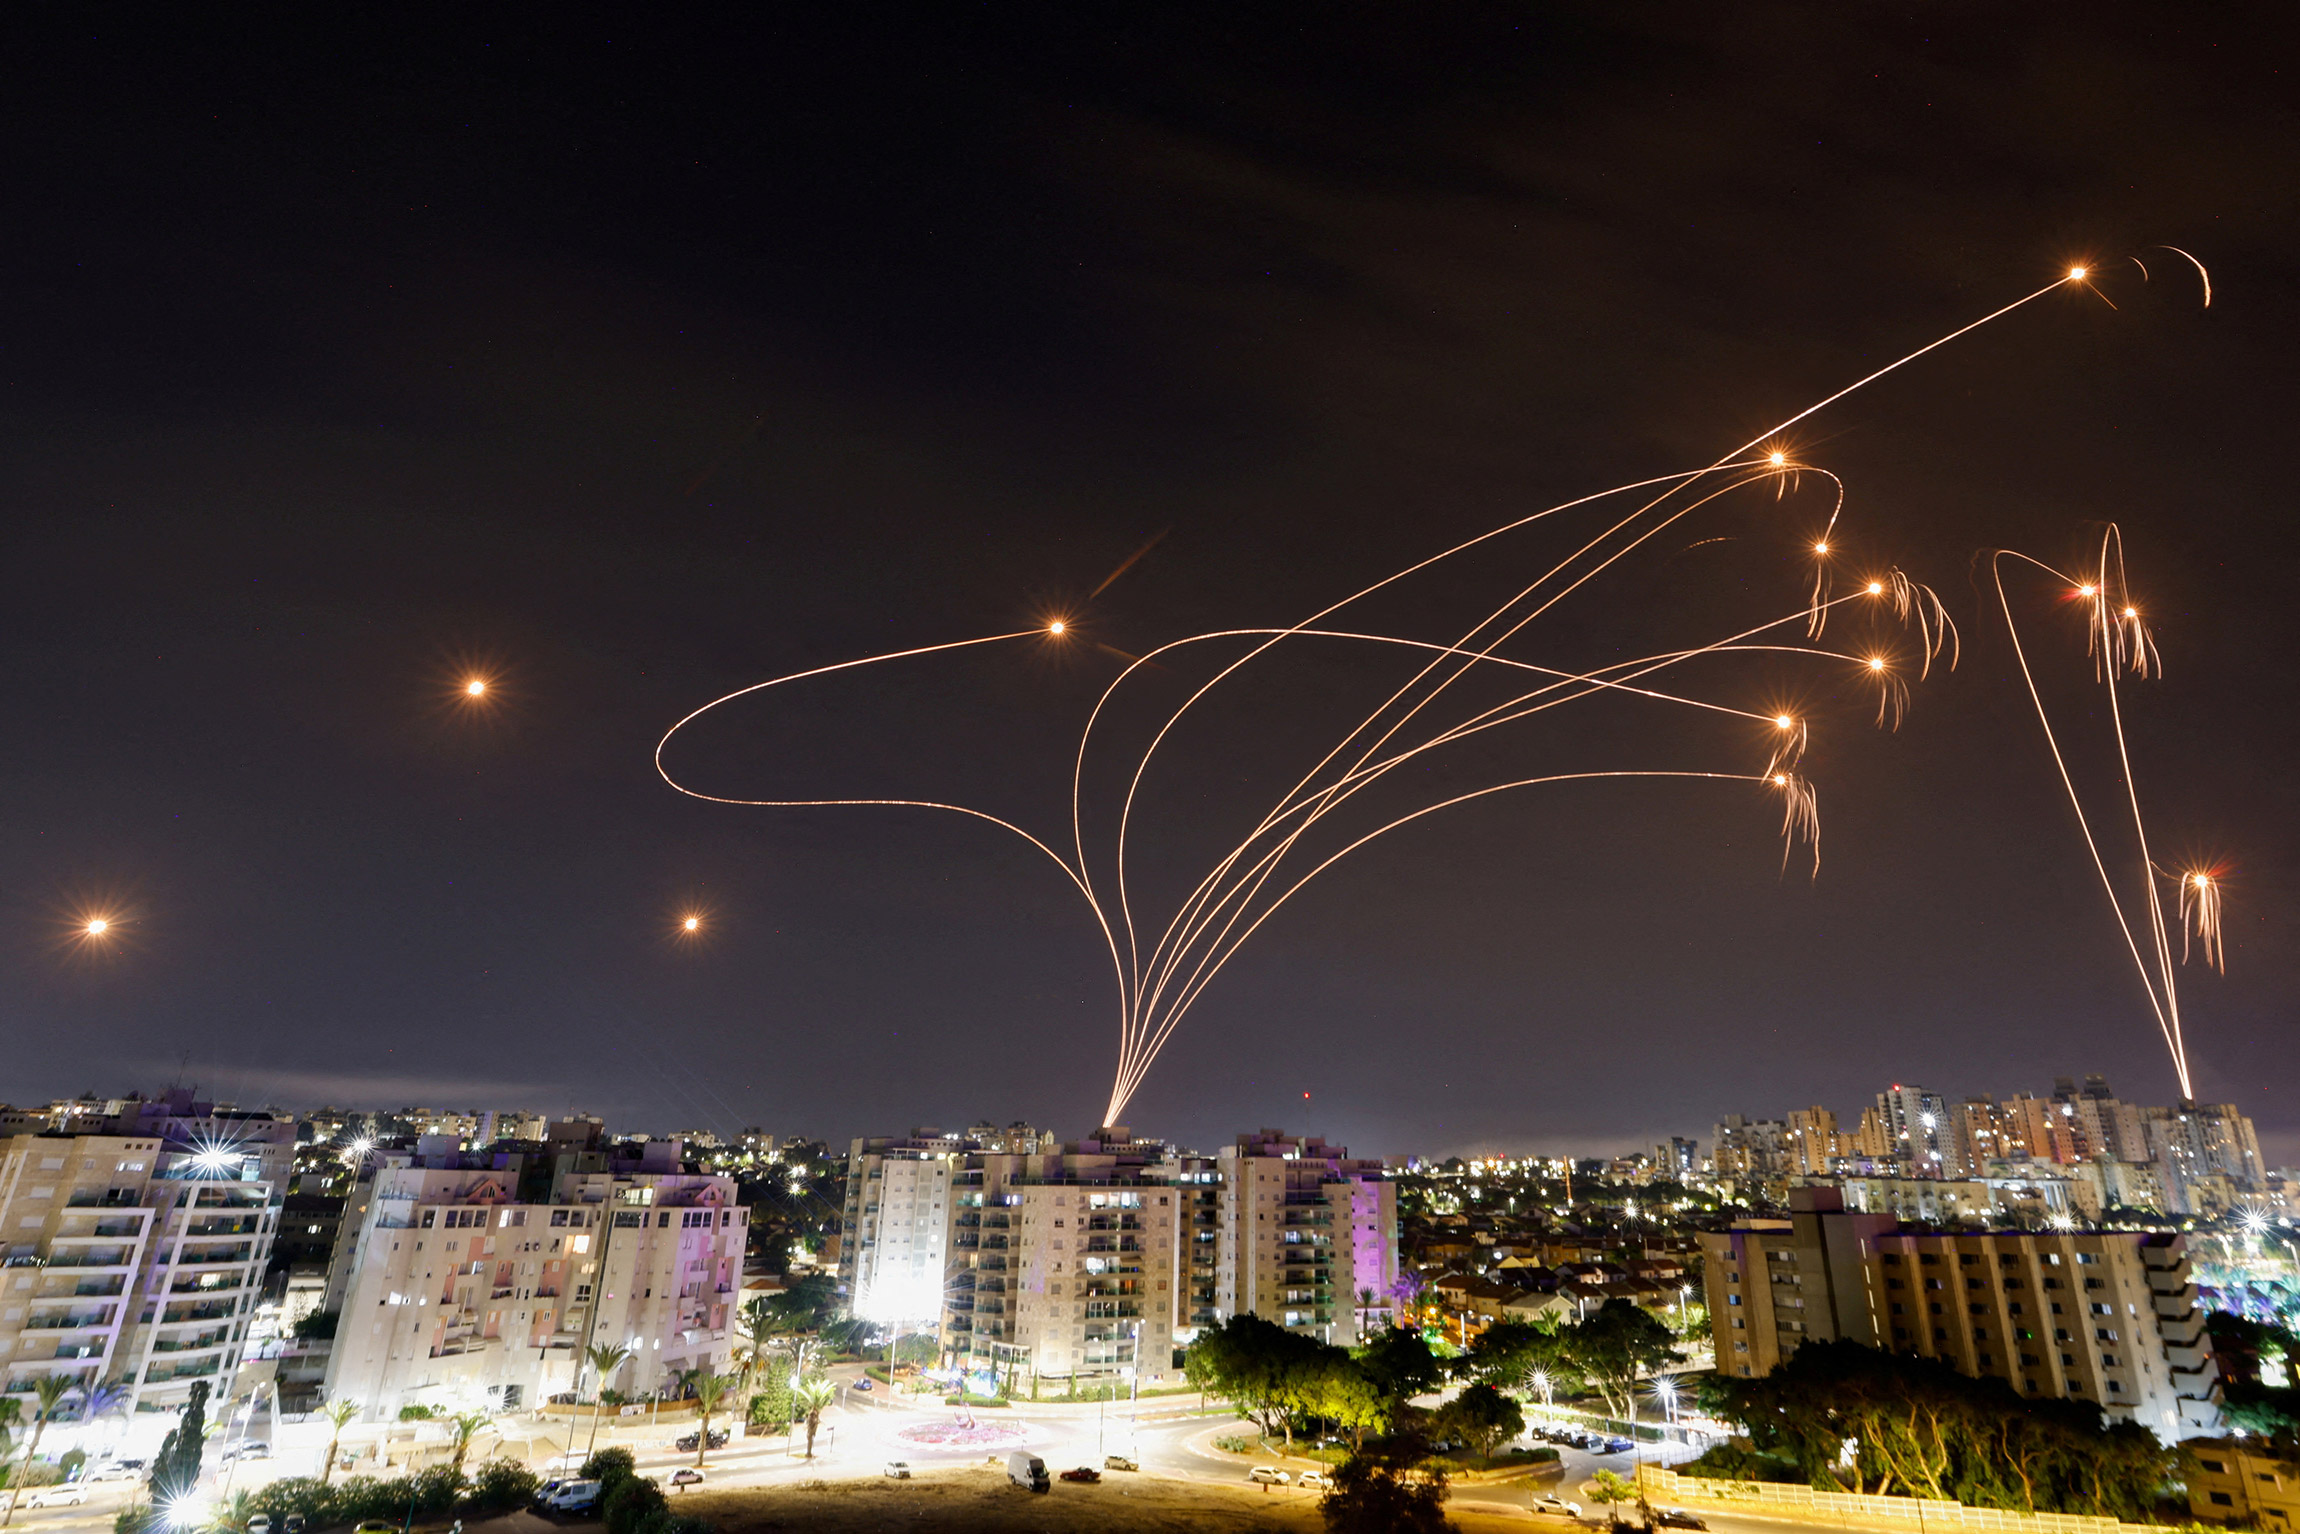 Израильская&nbsp;система ПВО&nbsp;&laquo;Железный купол&raquo; перехватывает ракеты, запущенные из сектора Газа, вид из города Ашкелон.&nbsp;9 октября

